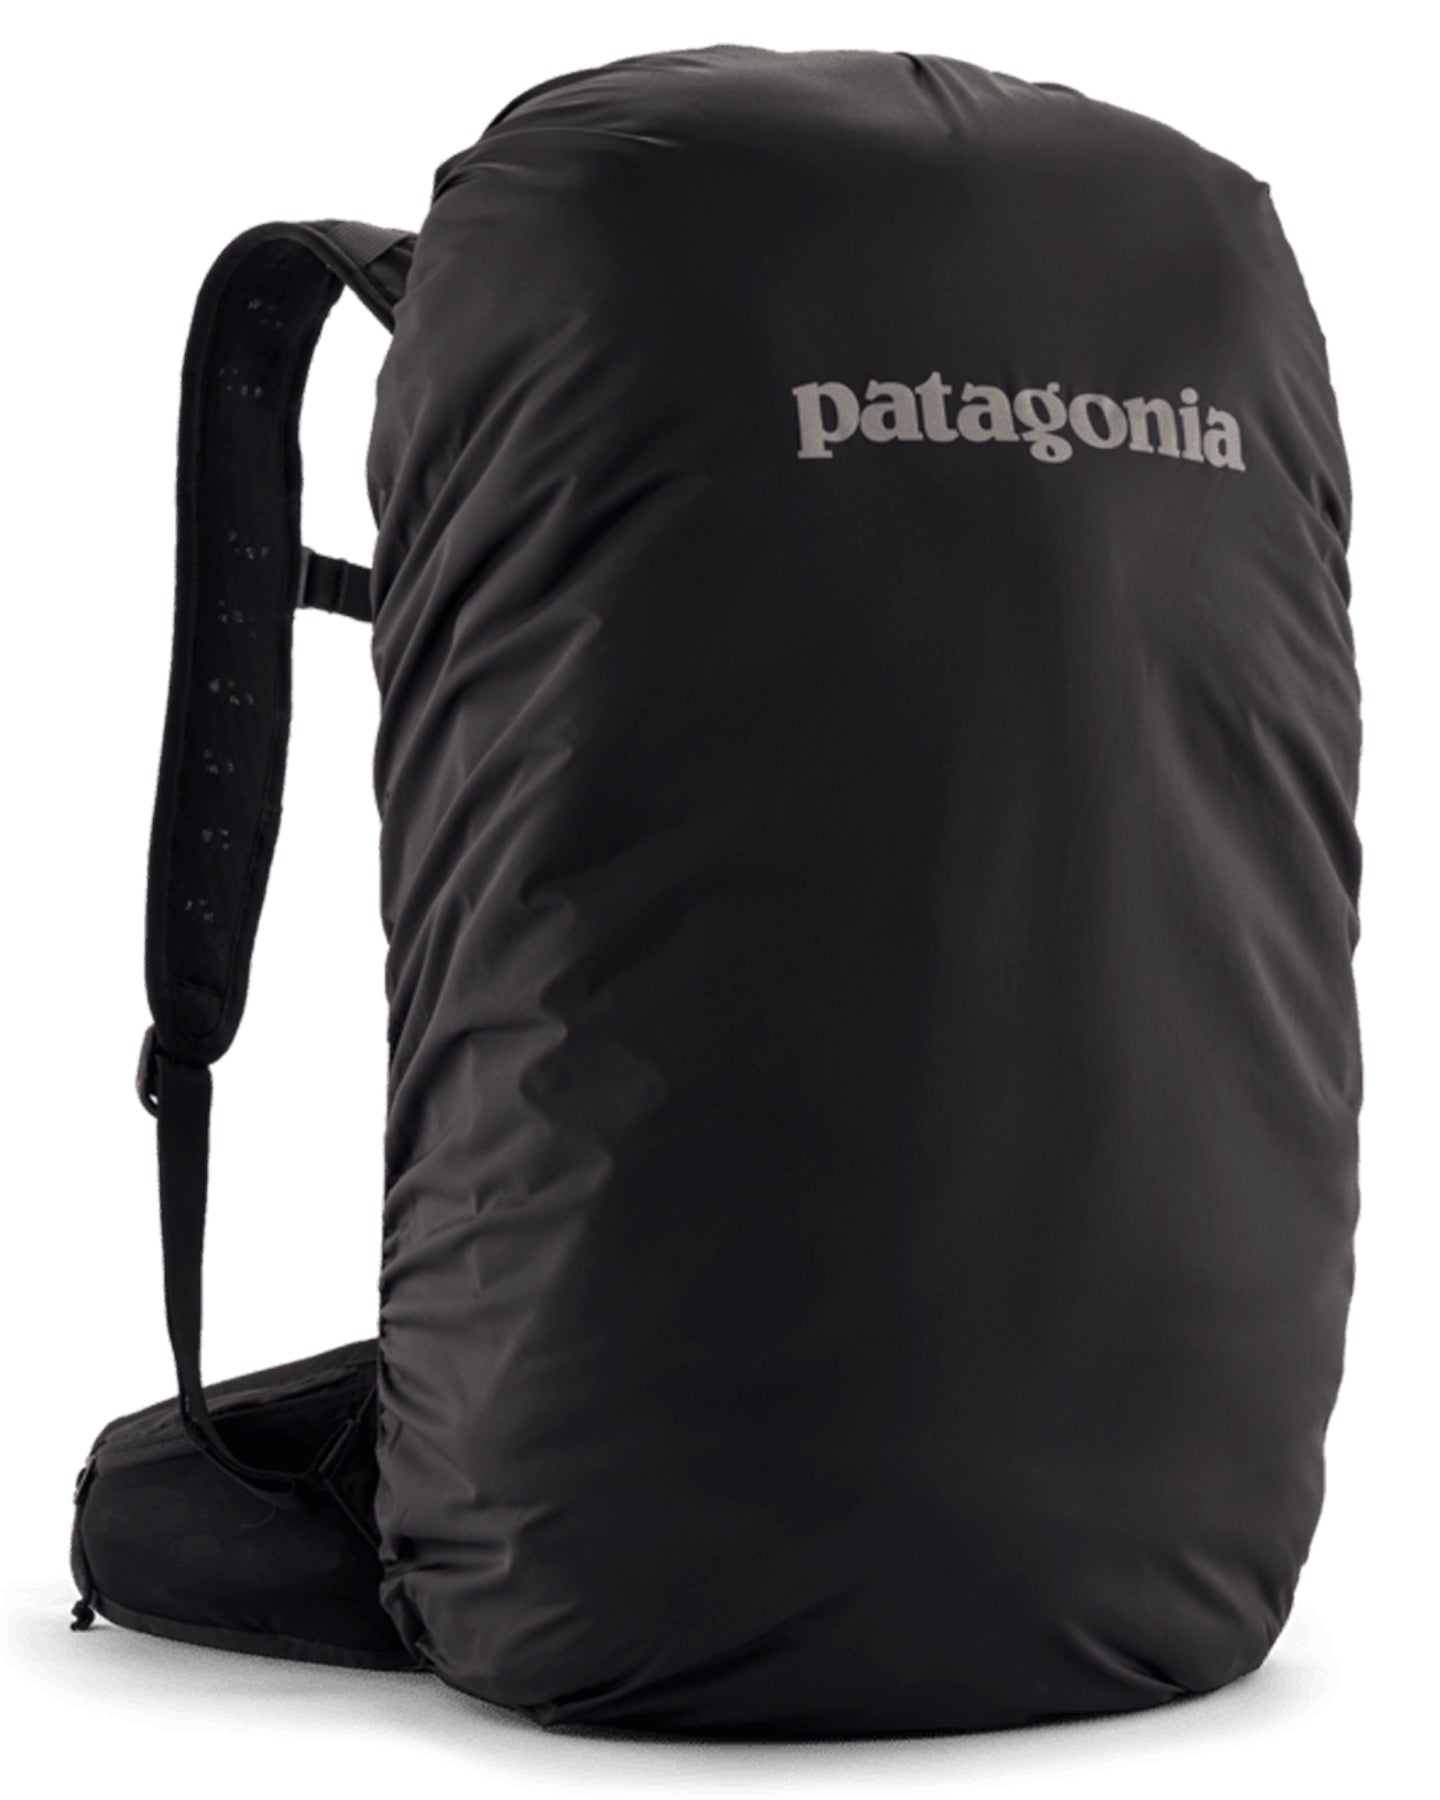 Patagonia Altvia Pack 28L - Black Backpacks - SnowSkiersWarehouse